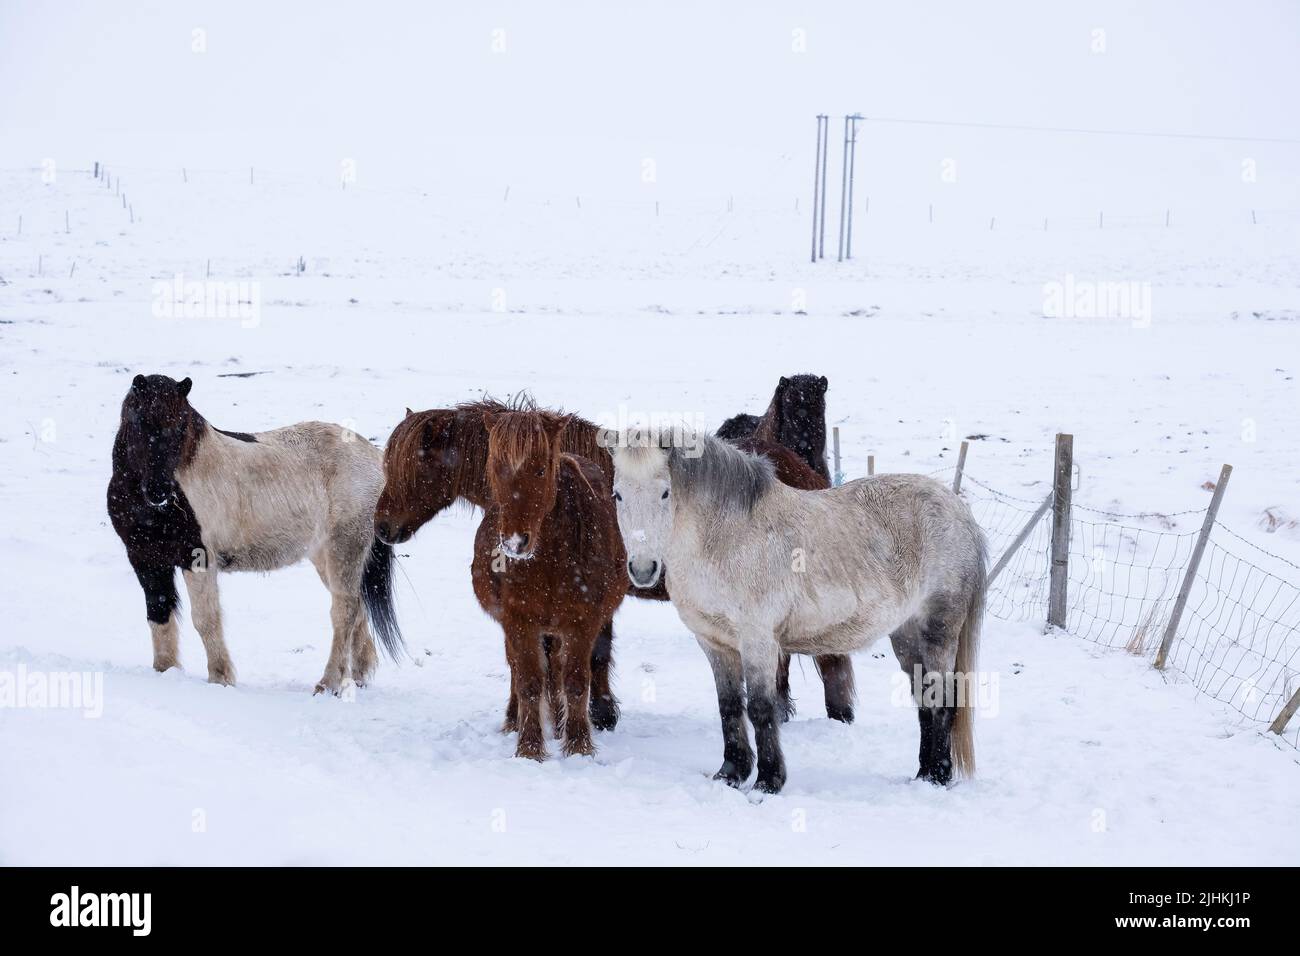 Des chevaux islandais à l'extérieur pendant une tempête de neige hivernale Banque D'Images